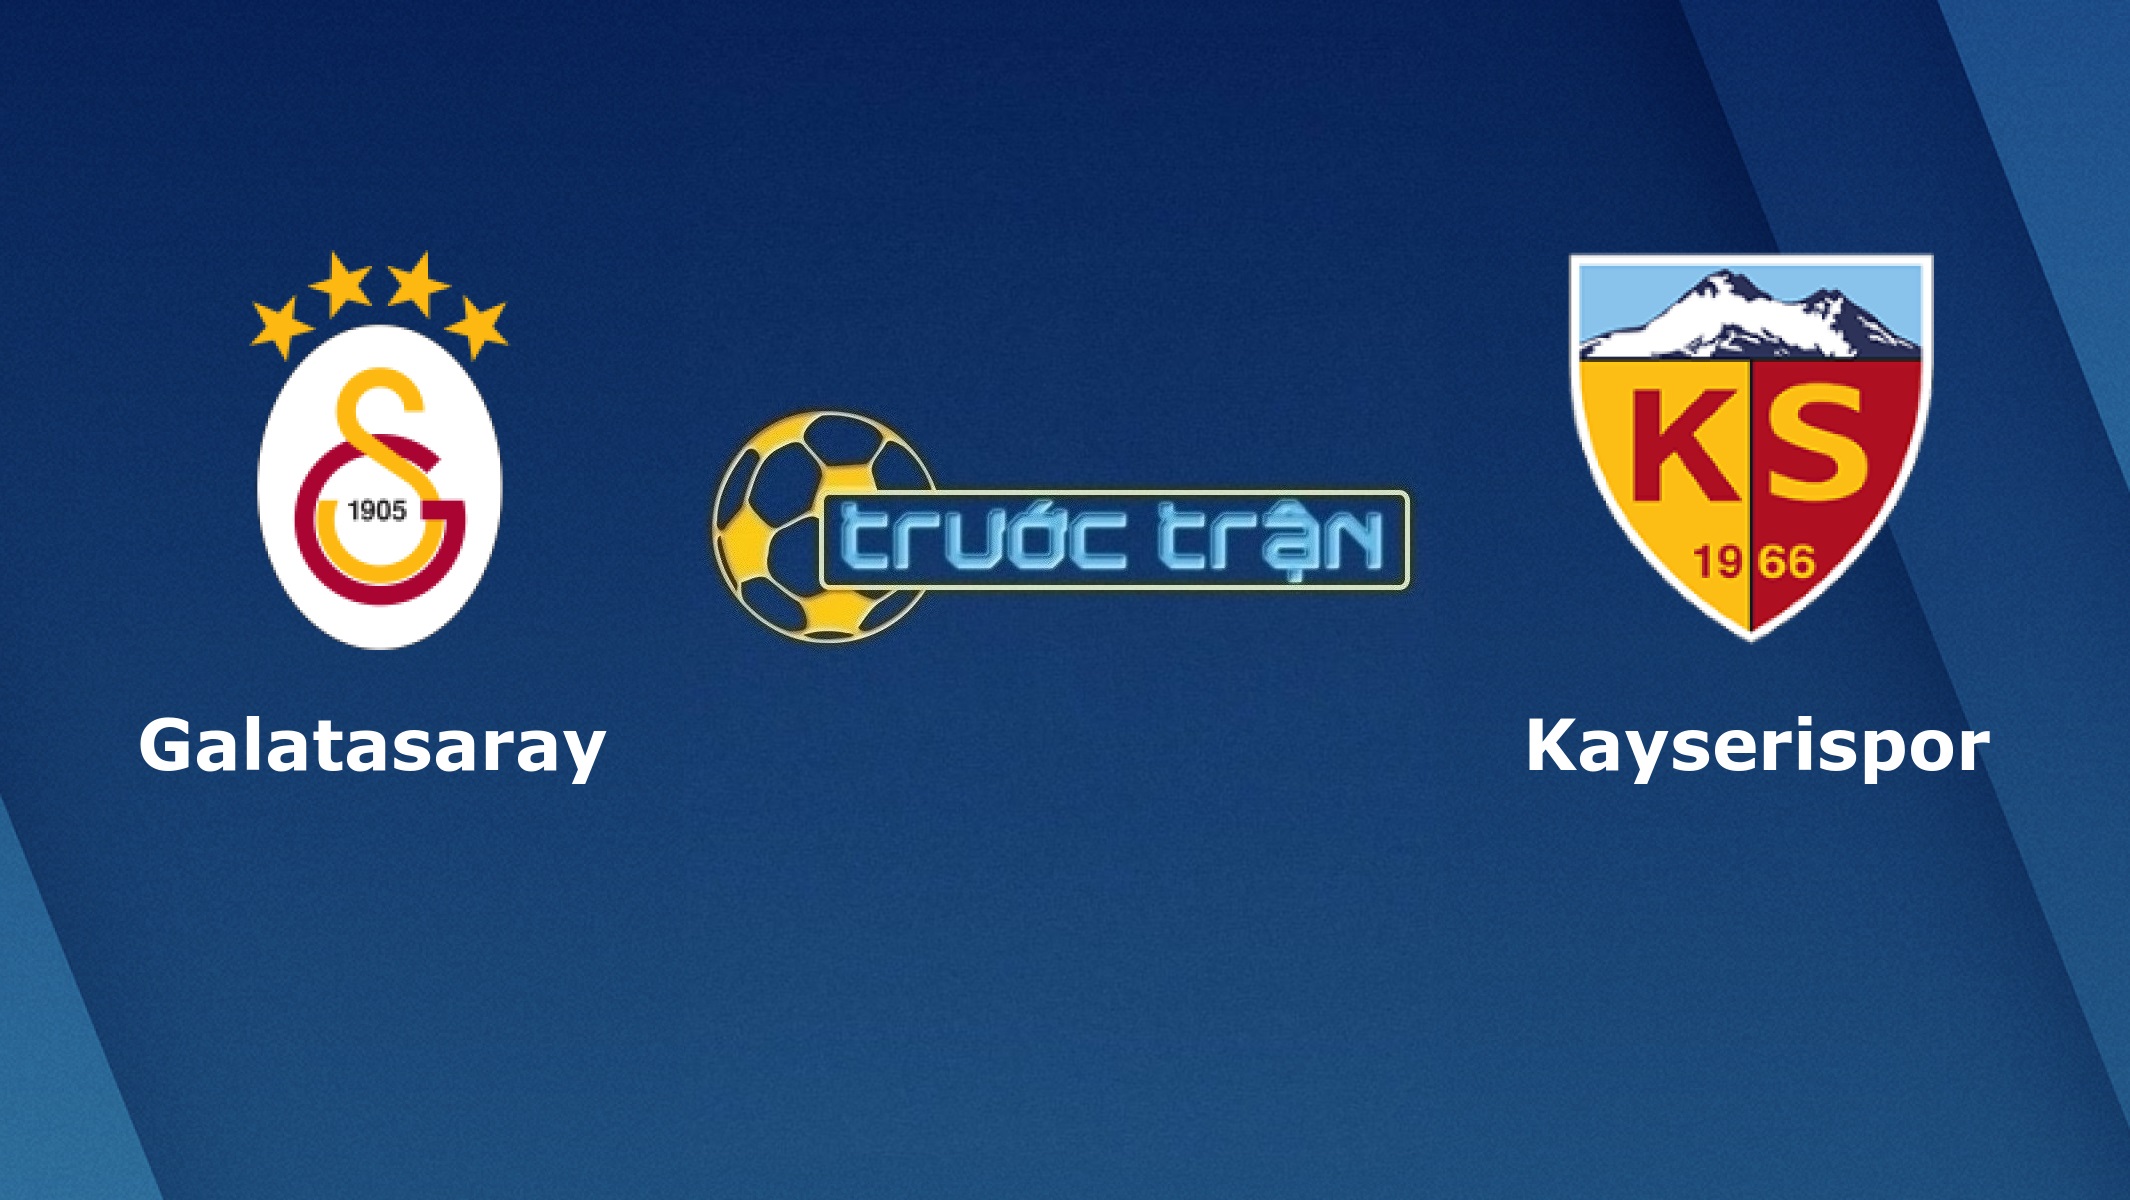 Galatasaray vs Kayserispor – Tip kèo bóng đá hôm nay – 23h30 23/11/2020